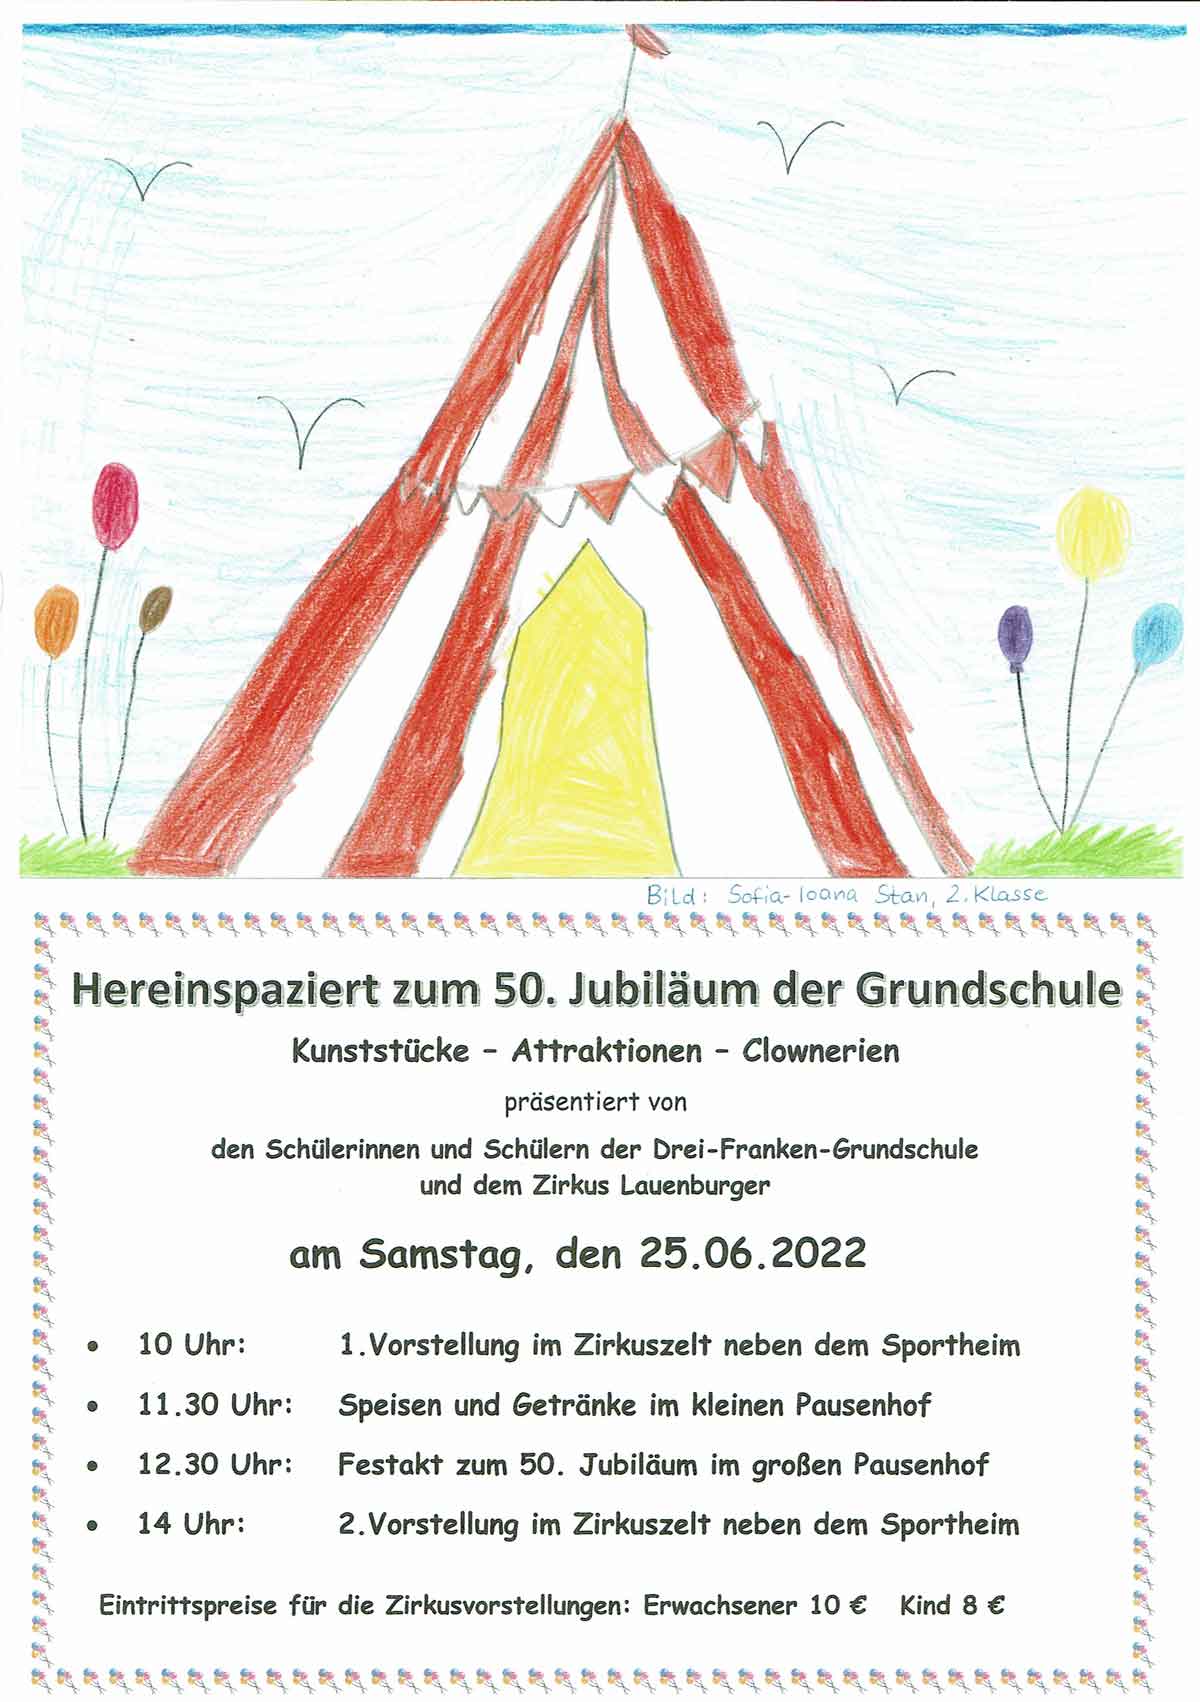 Einladung zum Zirkus und 50-jährigen Jubiläum der Drei-Franken-Grundschule Geiselwind